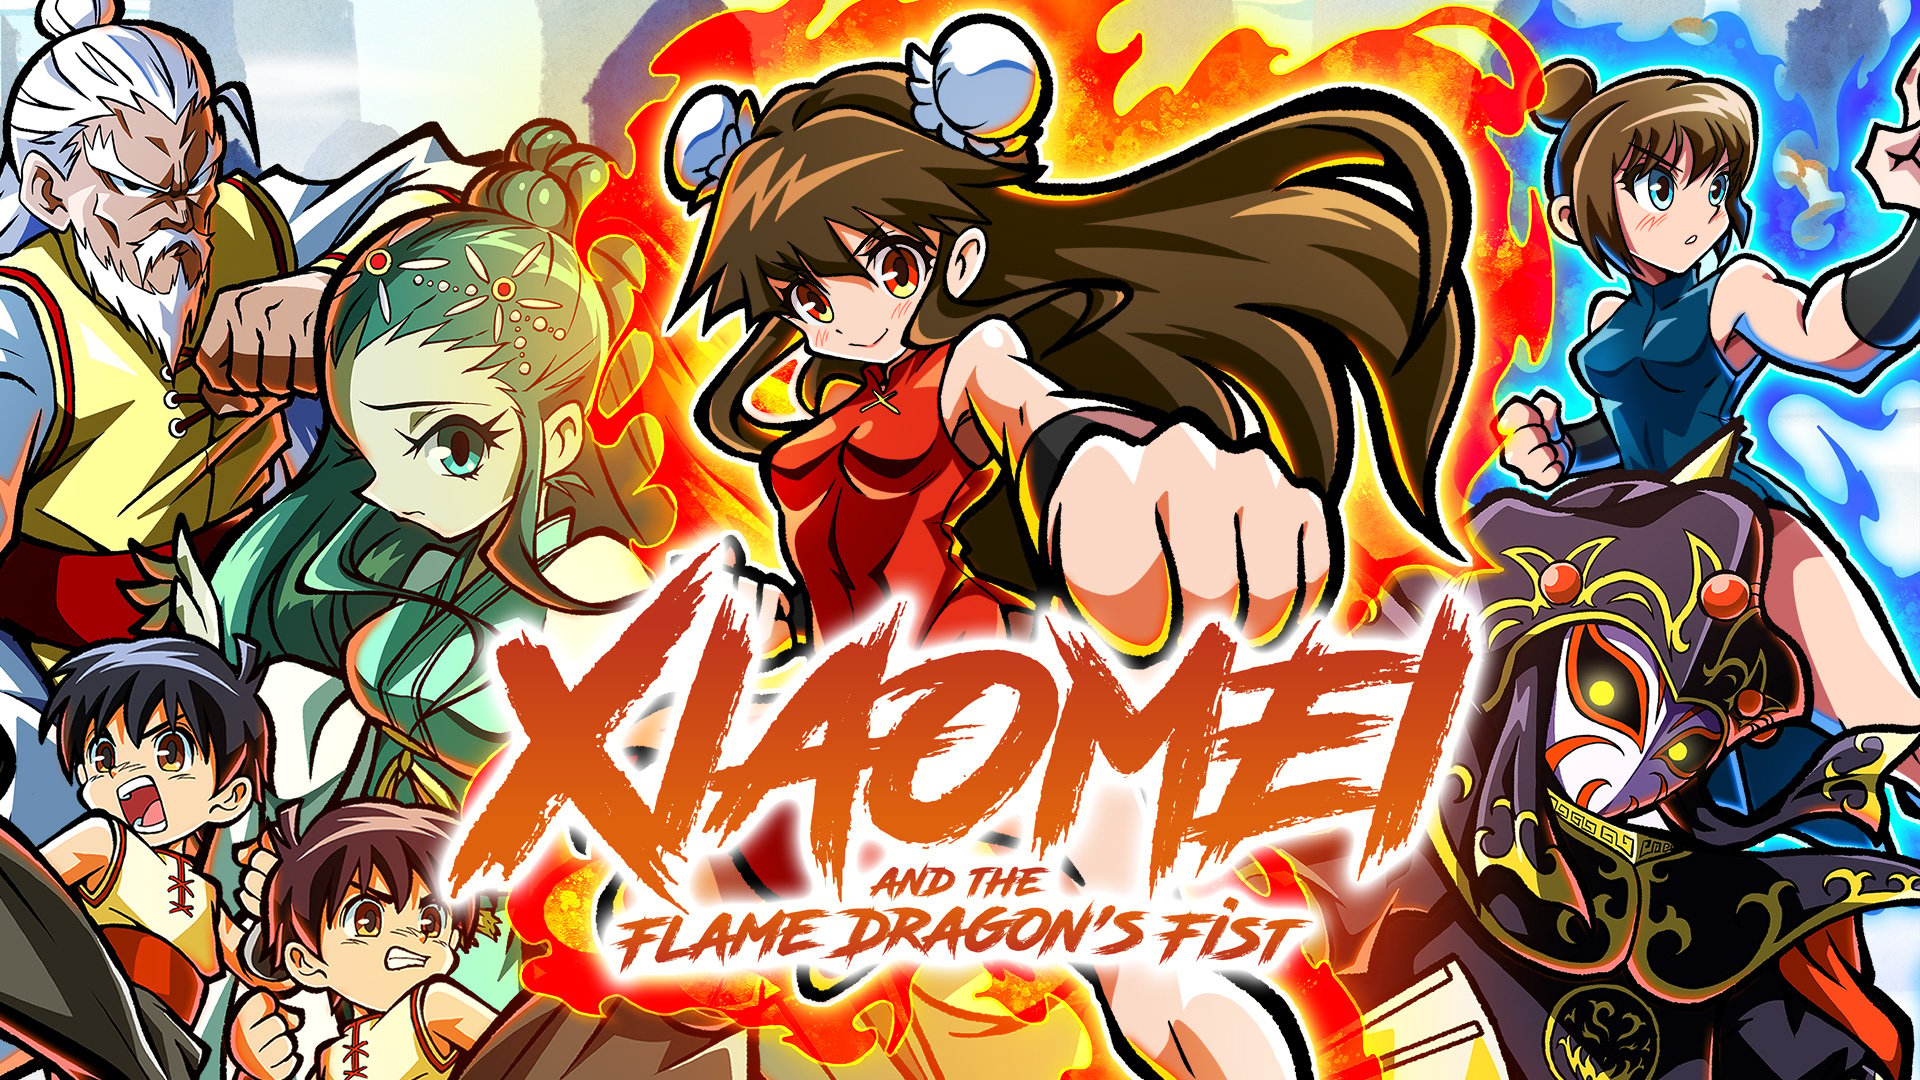 Xiaomi i Flame Dragon’s Fist for Switch zadebiutuje na Zachodzie 31 marca